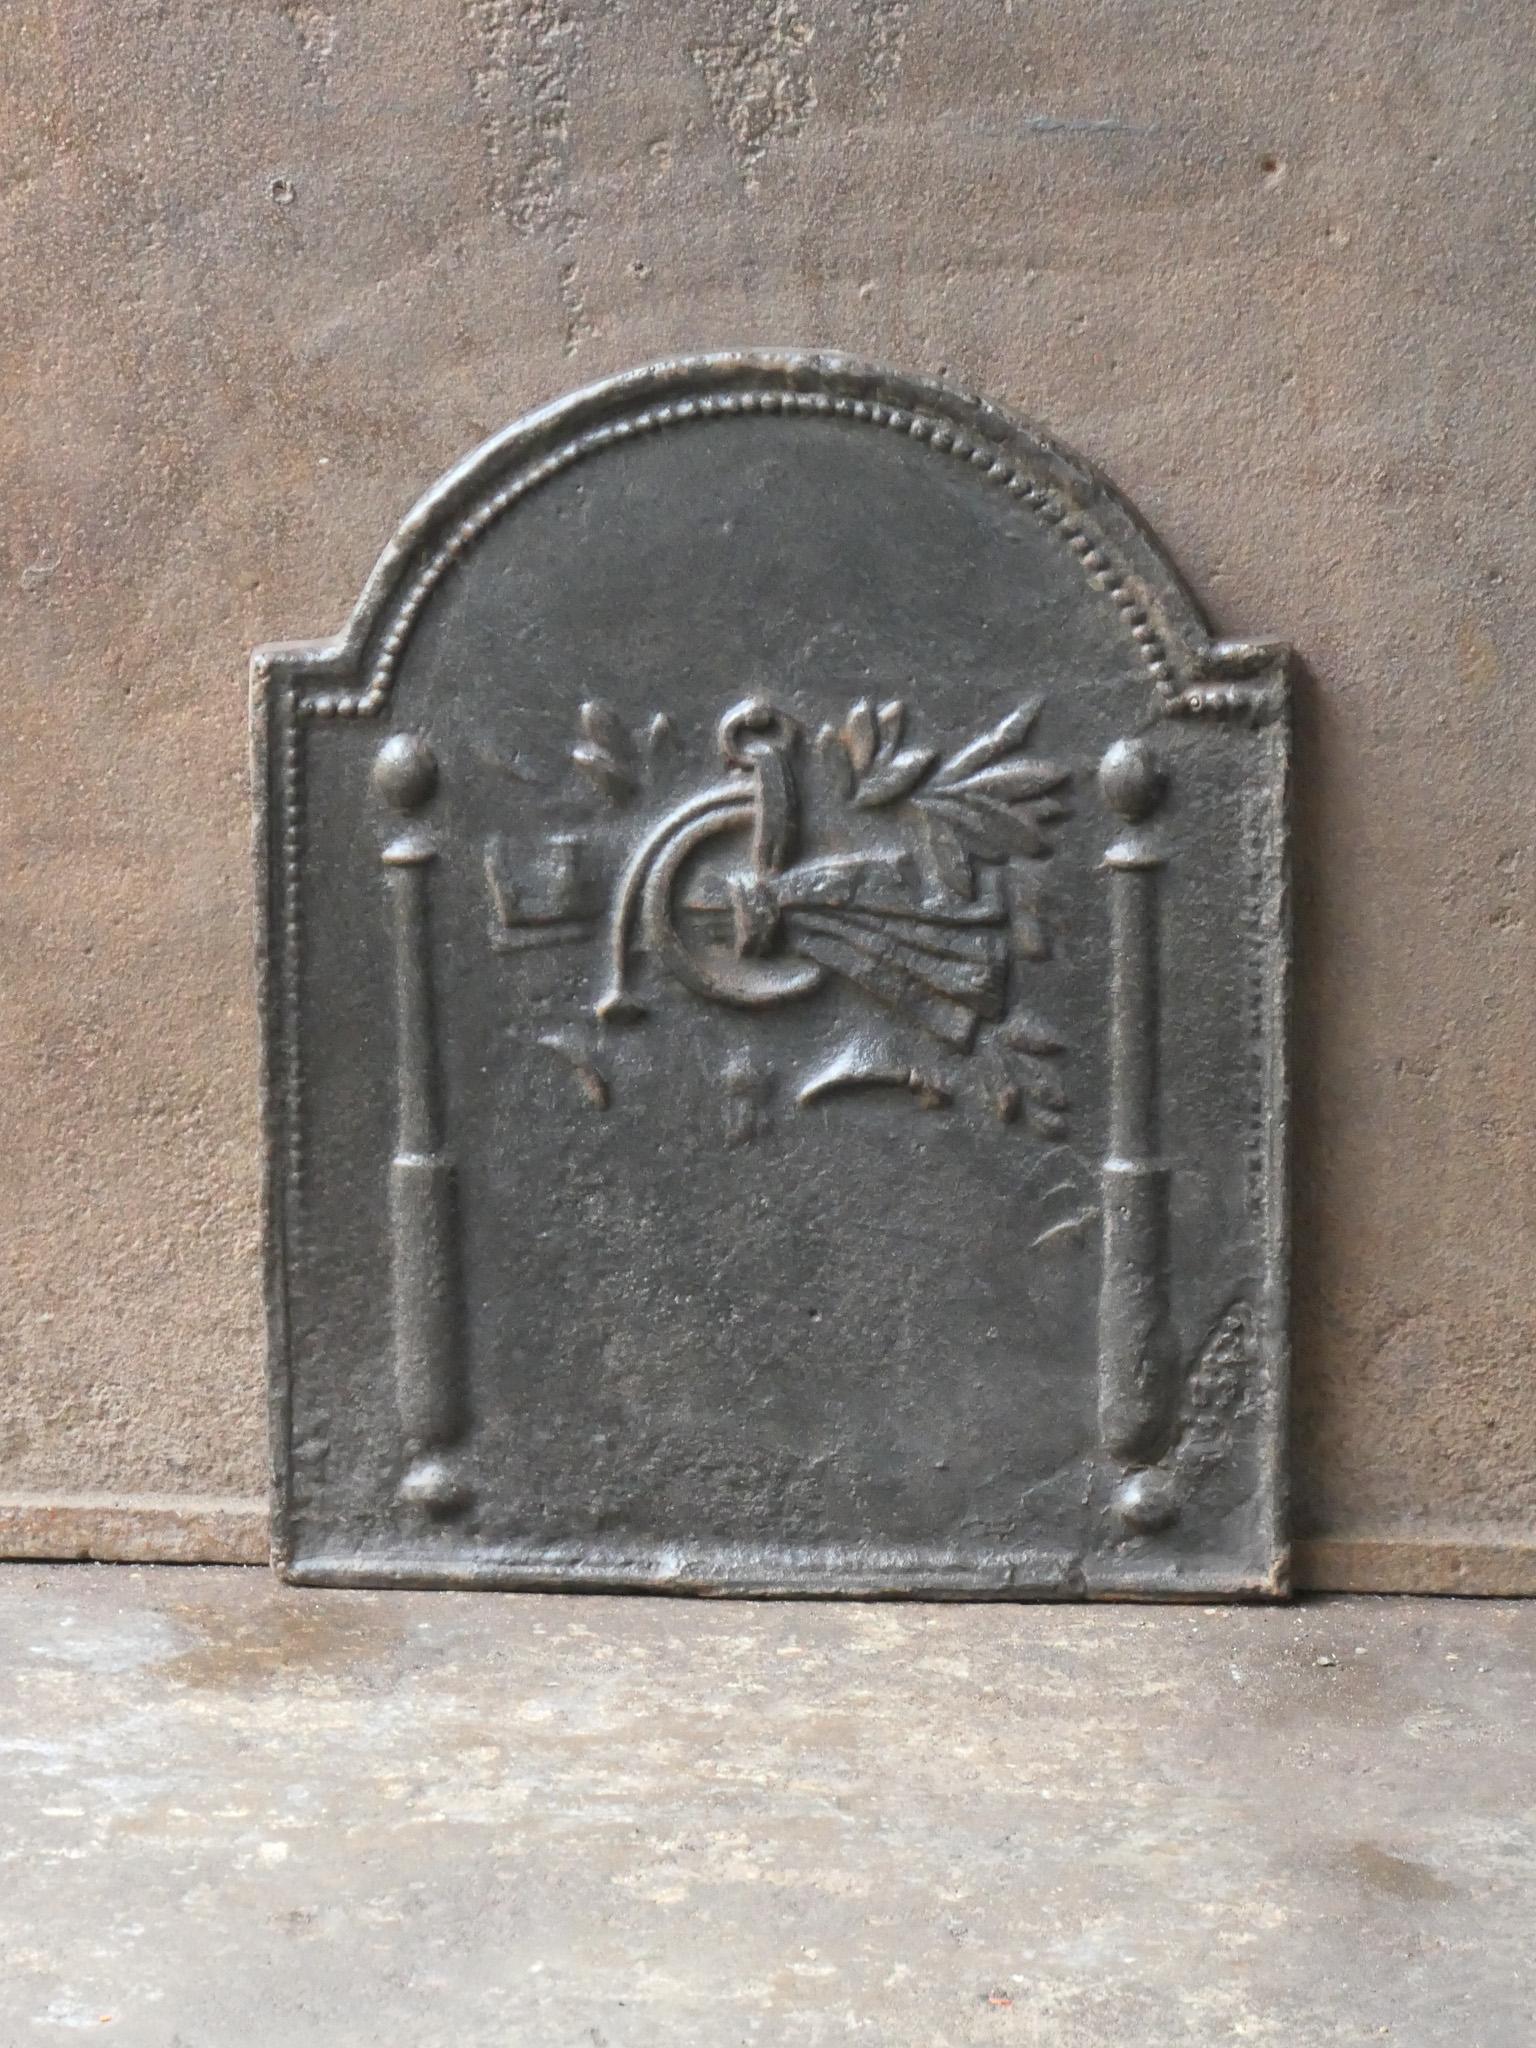 Plaque de cheminée française du 20e siècle de style Louis XV avec deux piliers et un décor.

La plaque de cheminée est en fonte et a une patine brune naturelle. Sur demande, elle peut être fabriquée en noir ou en étain, avec un vernis à poêle, sans